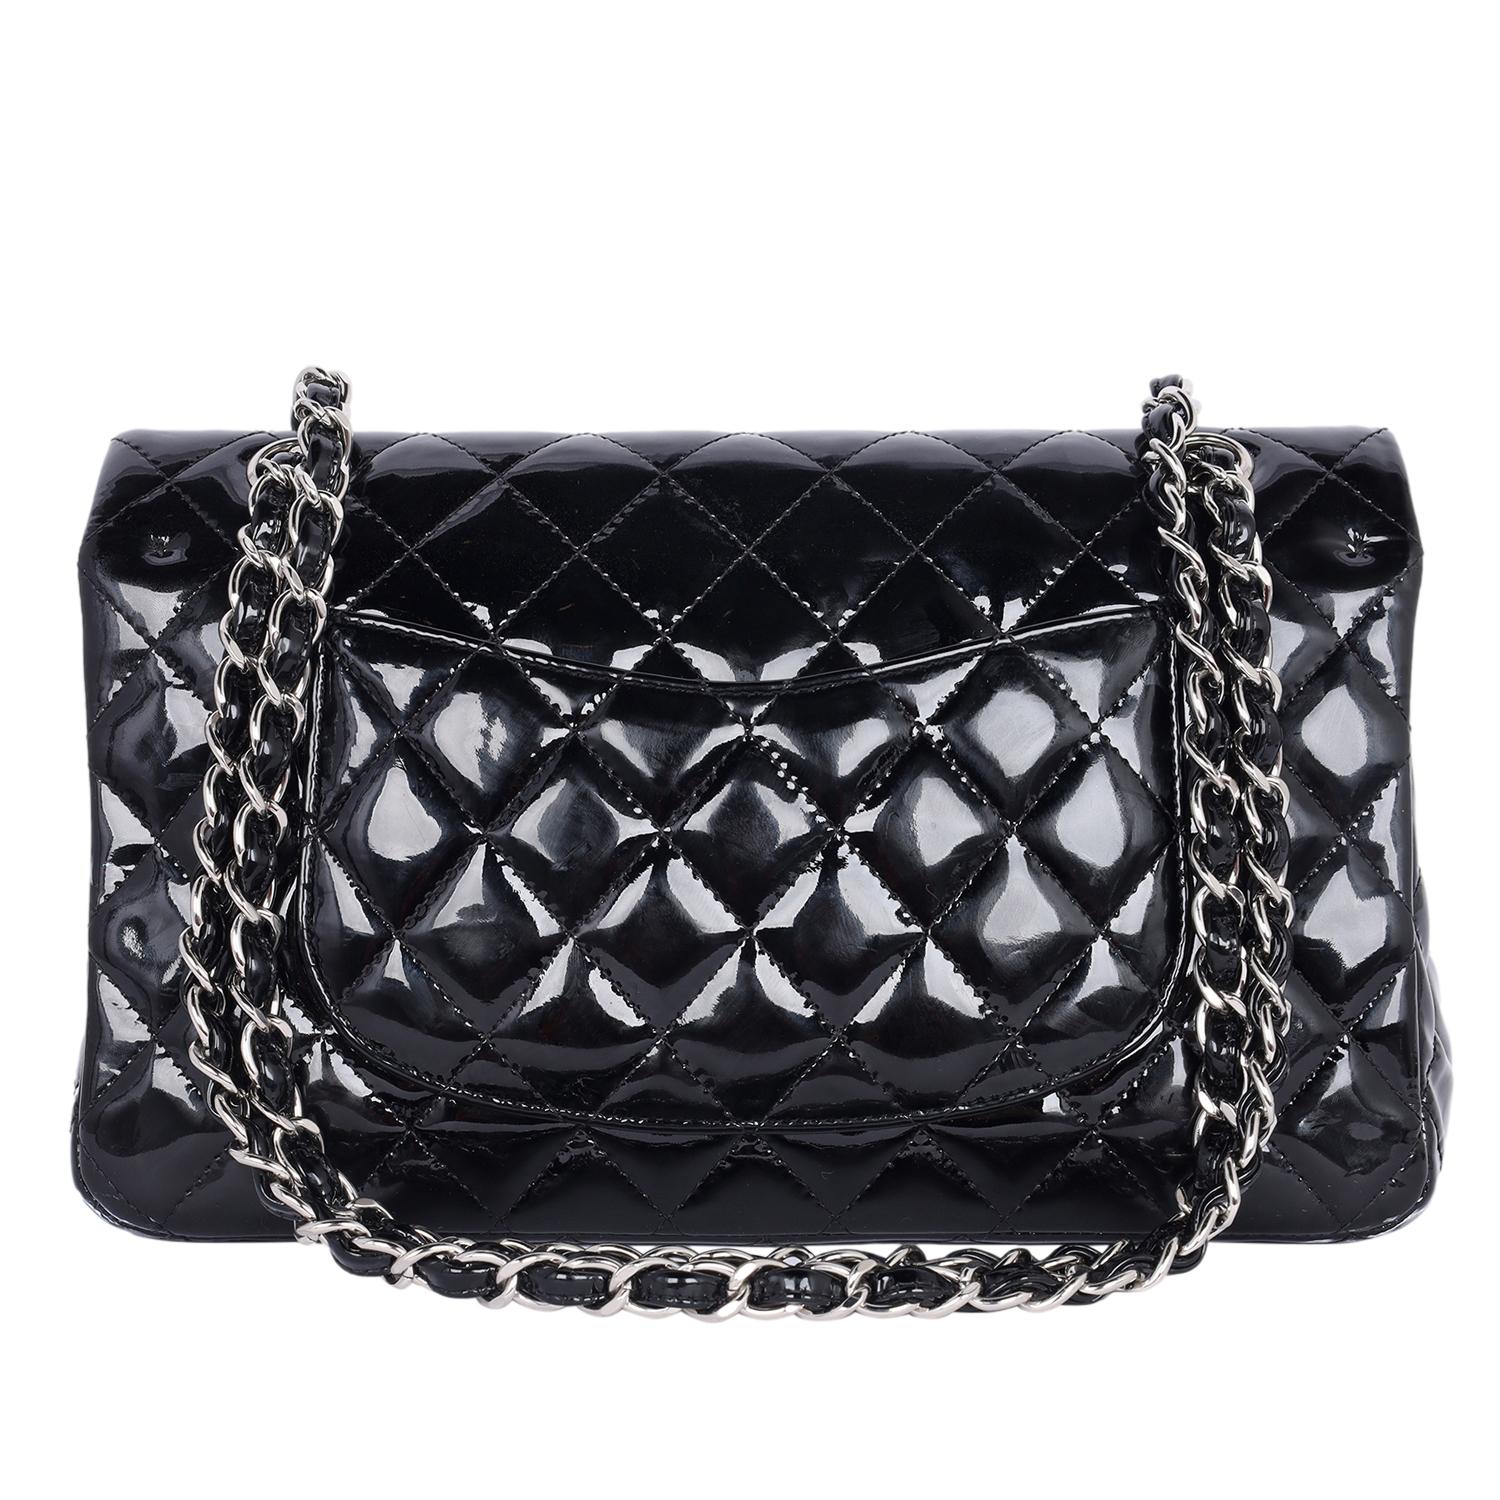 Women's Chanel Double Flap Patent Leather Shoulder Bag Black